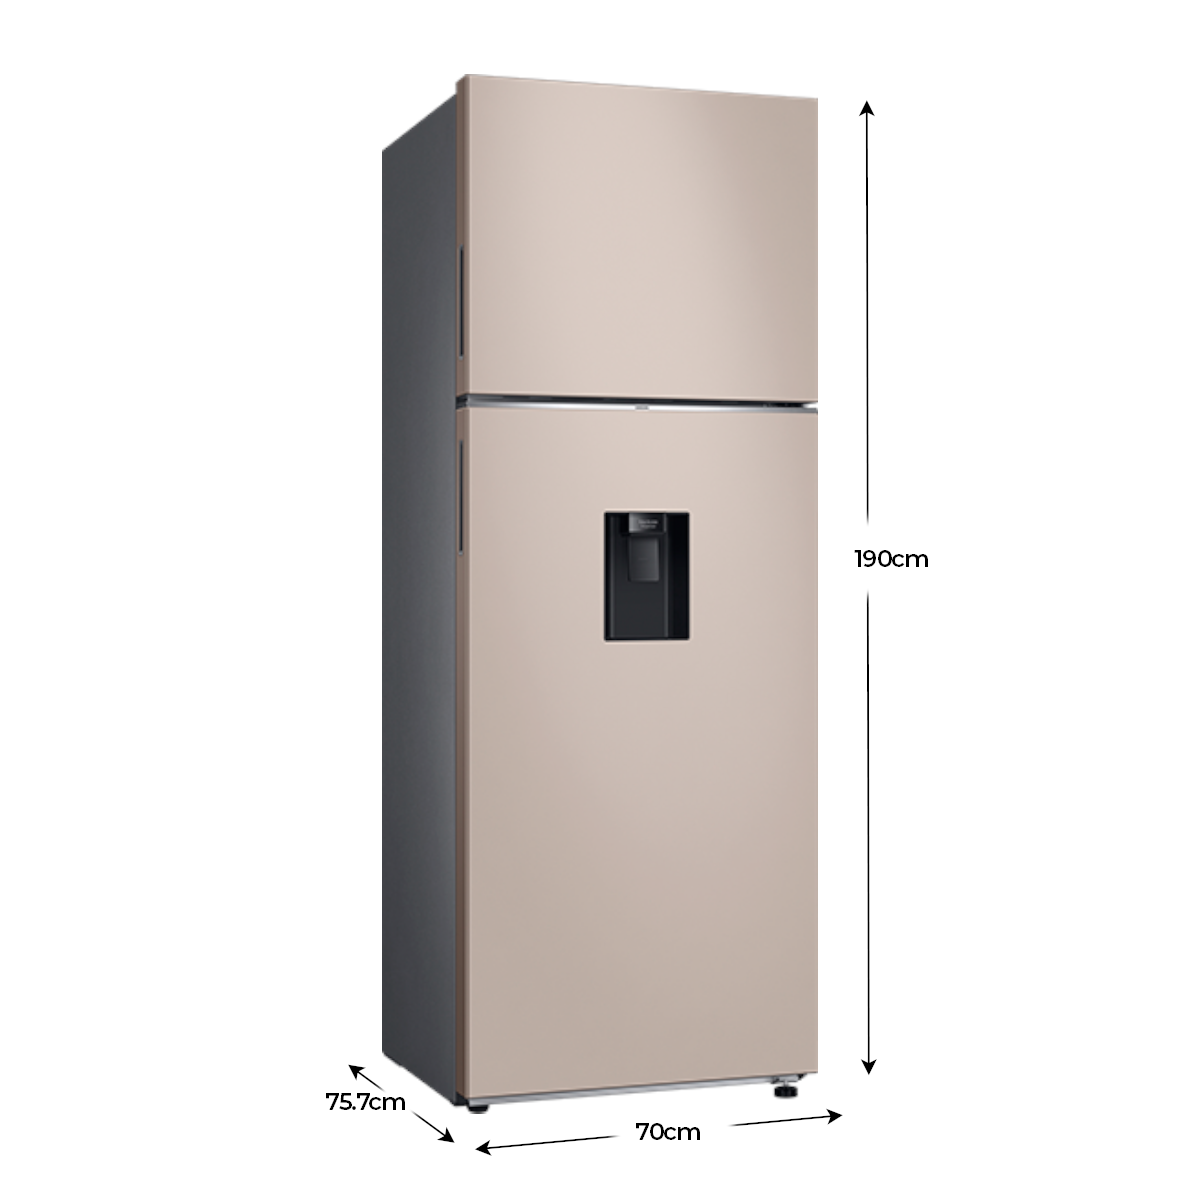 Refrigeradora Samsung Top Mount 18 pc RT53DB6754ETAP bespoke beige WiFi inteligente integrado dispensador de agua